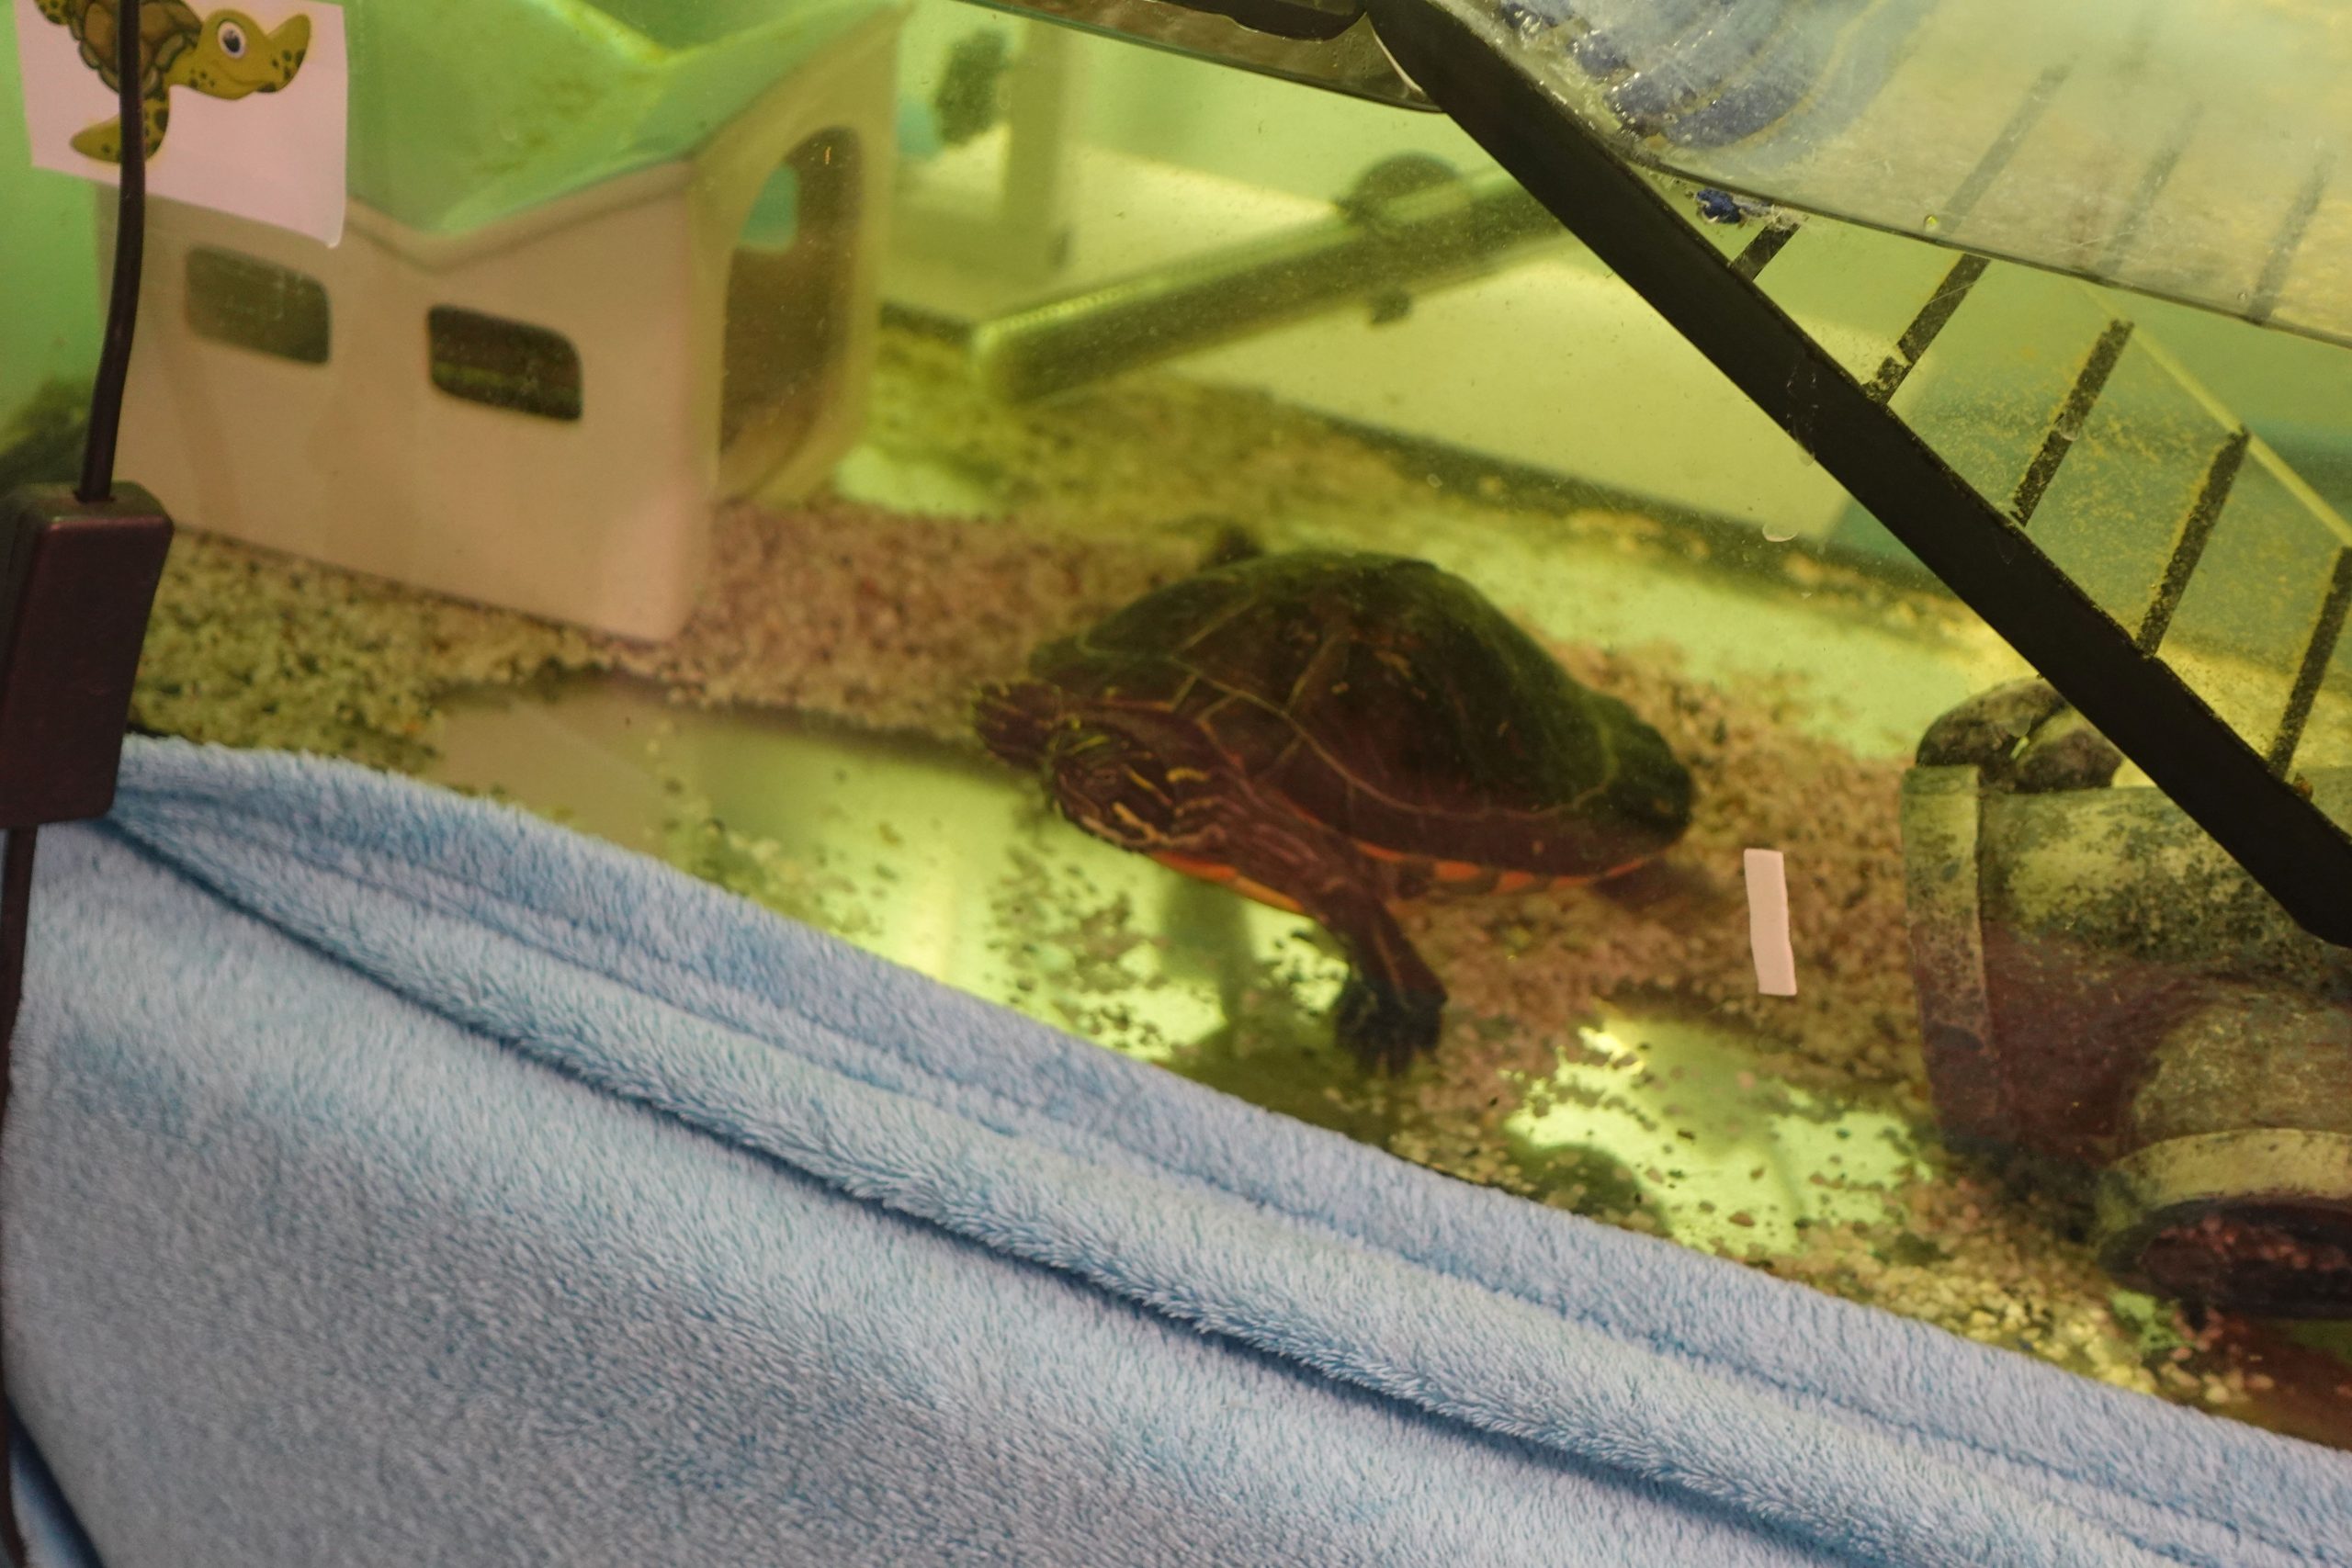 Blick in ein Aquarium, in dem eine Schildkröte schwimmt